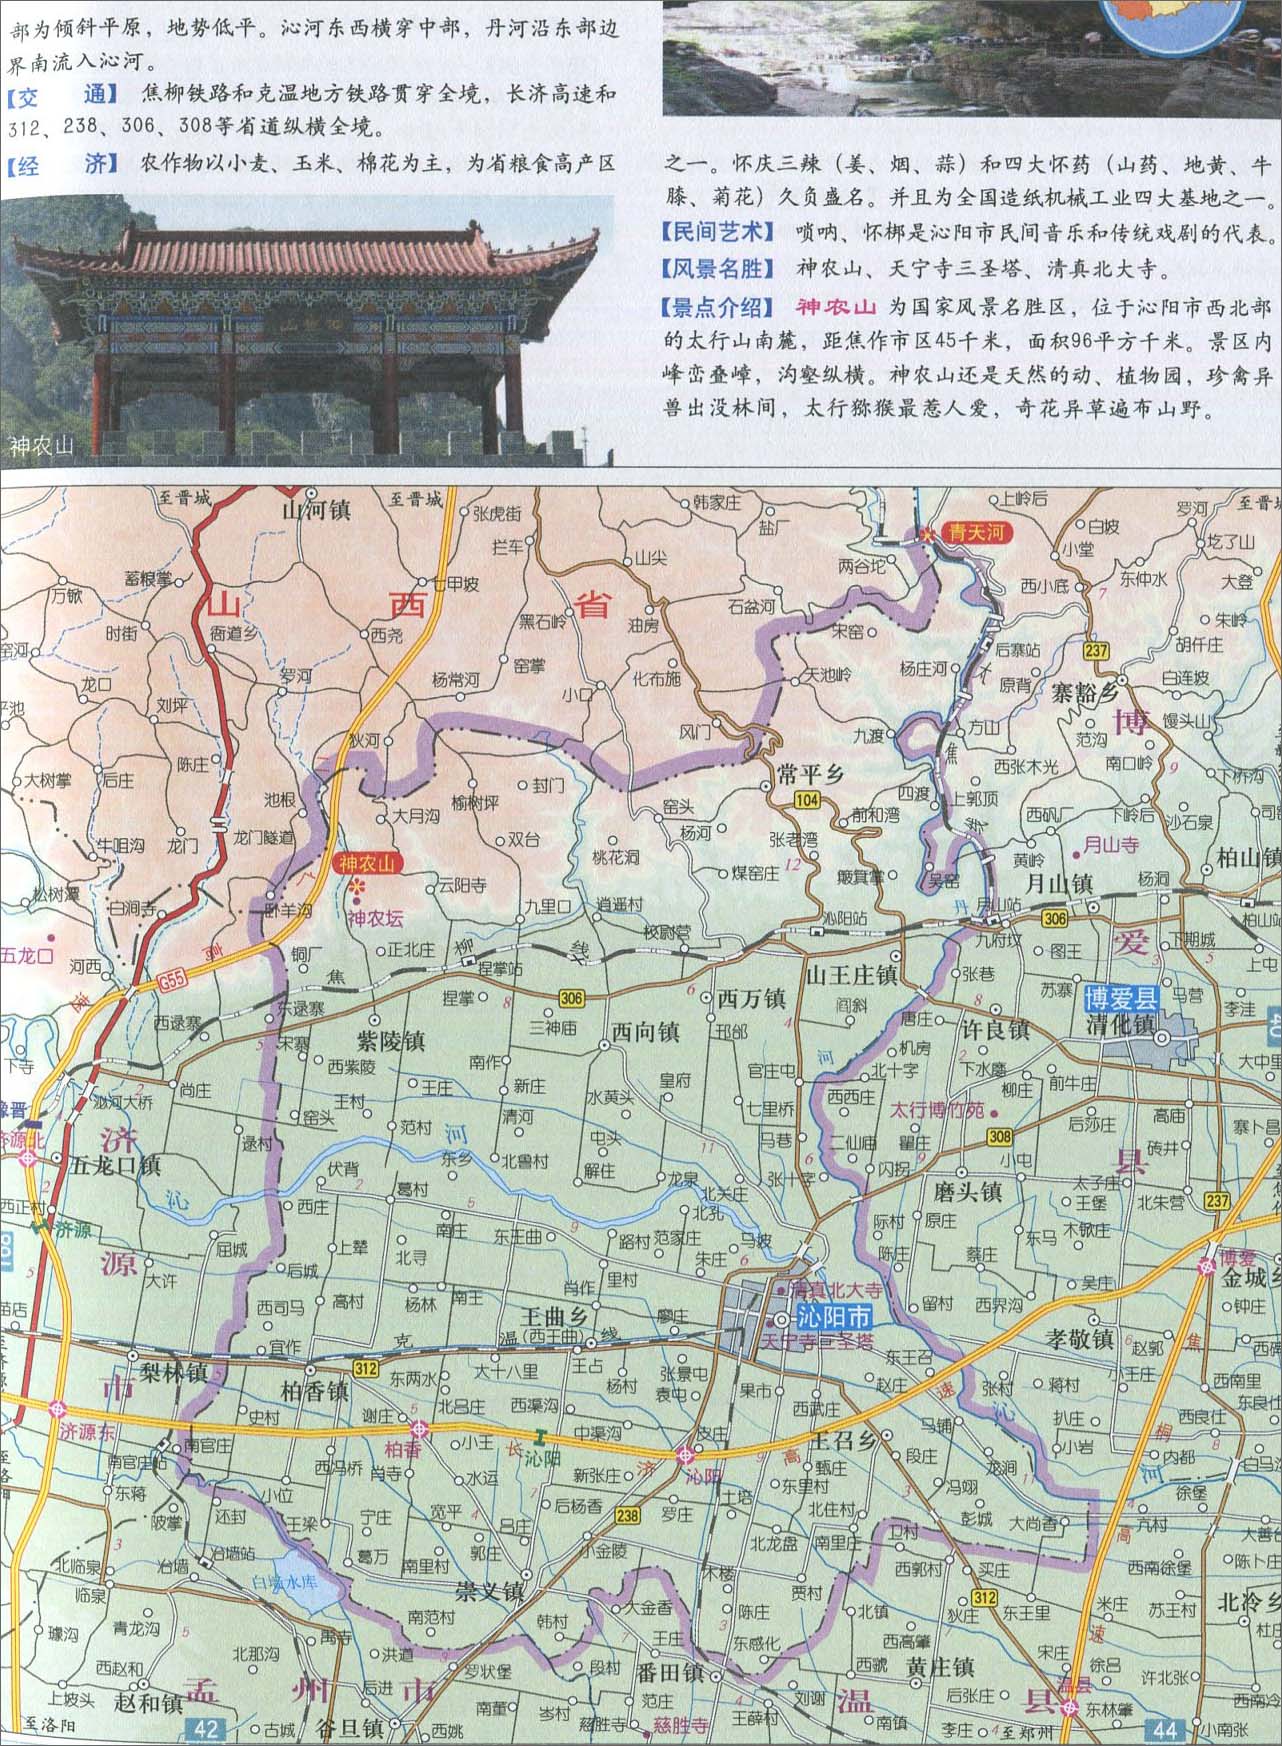 濮阳市 上一幅地图: 孟州市地图 | 焦作市 | 下一幅地图: 武陟县地图图片